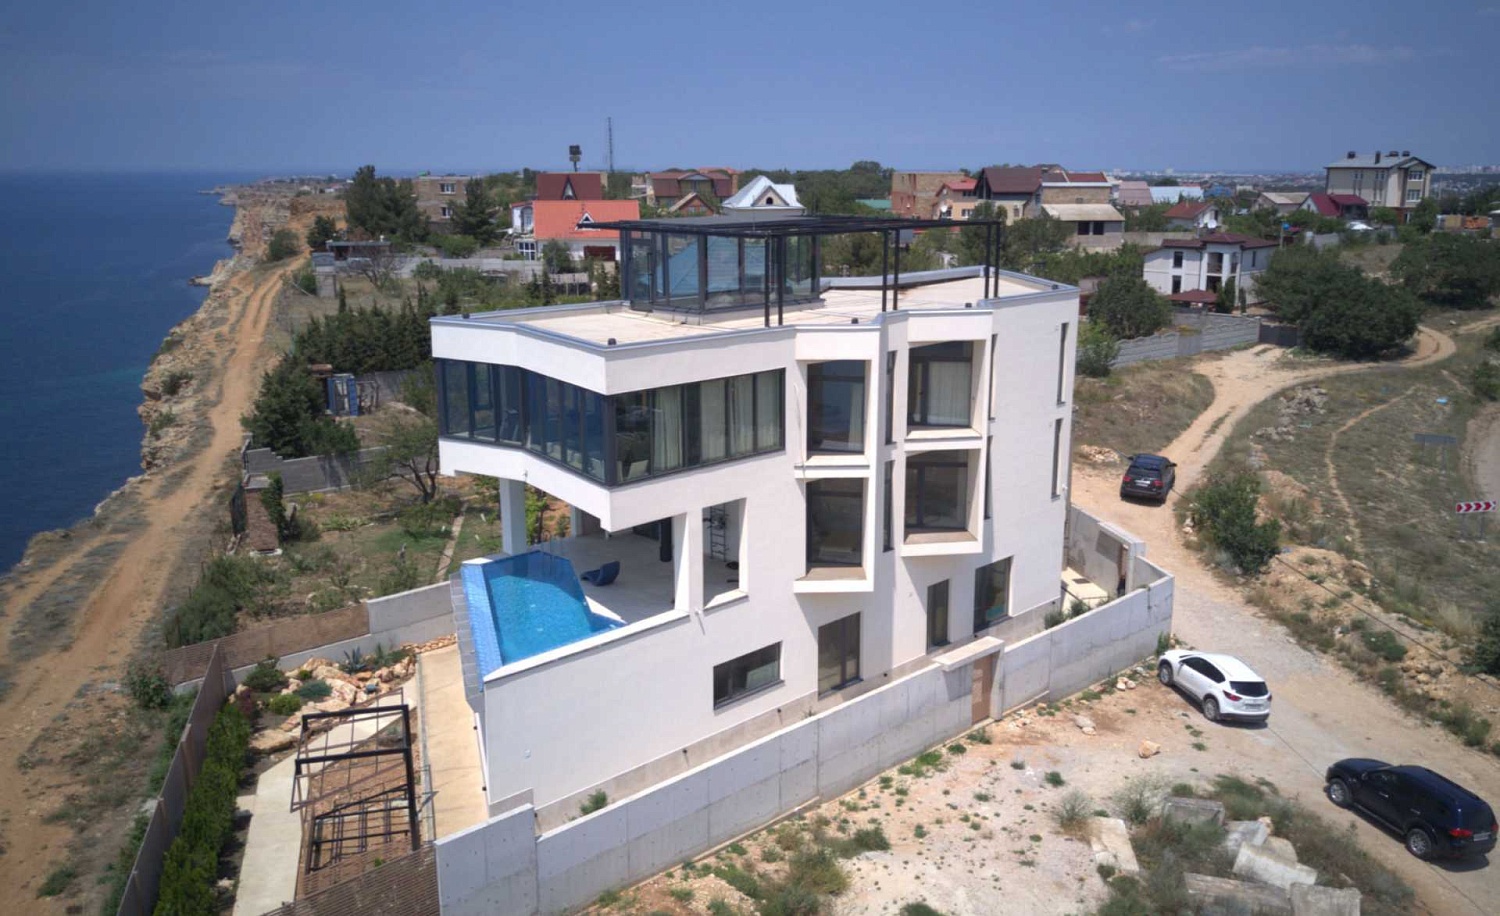 Отзыв о строительстве дома в Севастополе, - Мы решили создать лучшее здание в Крыму